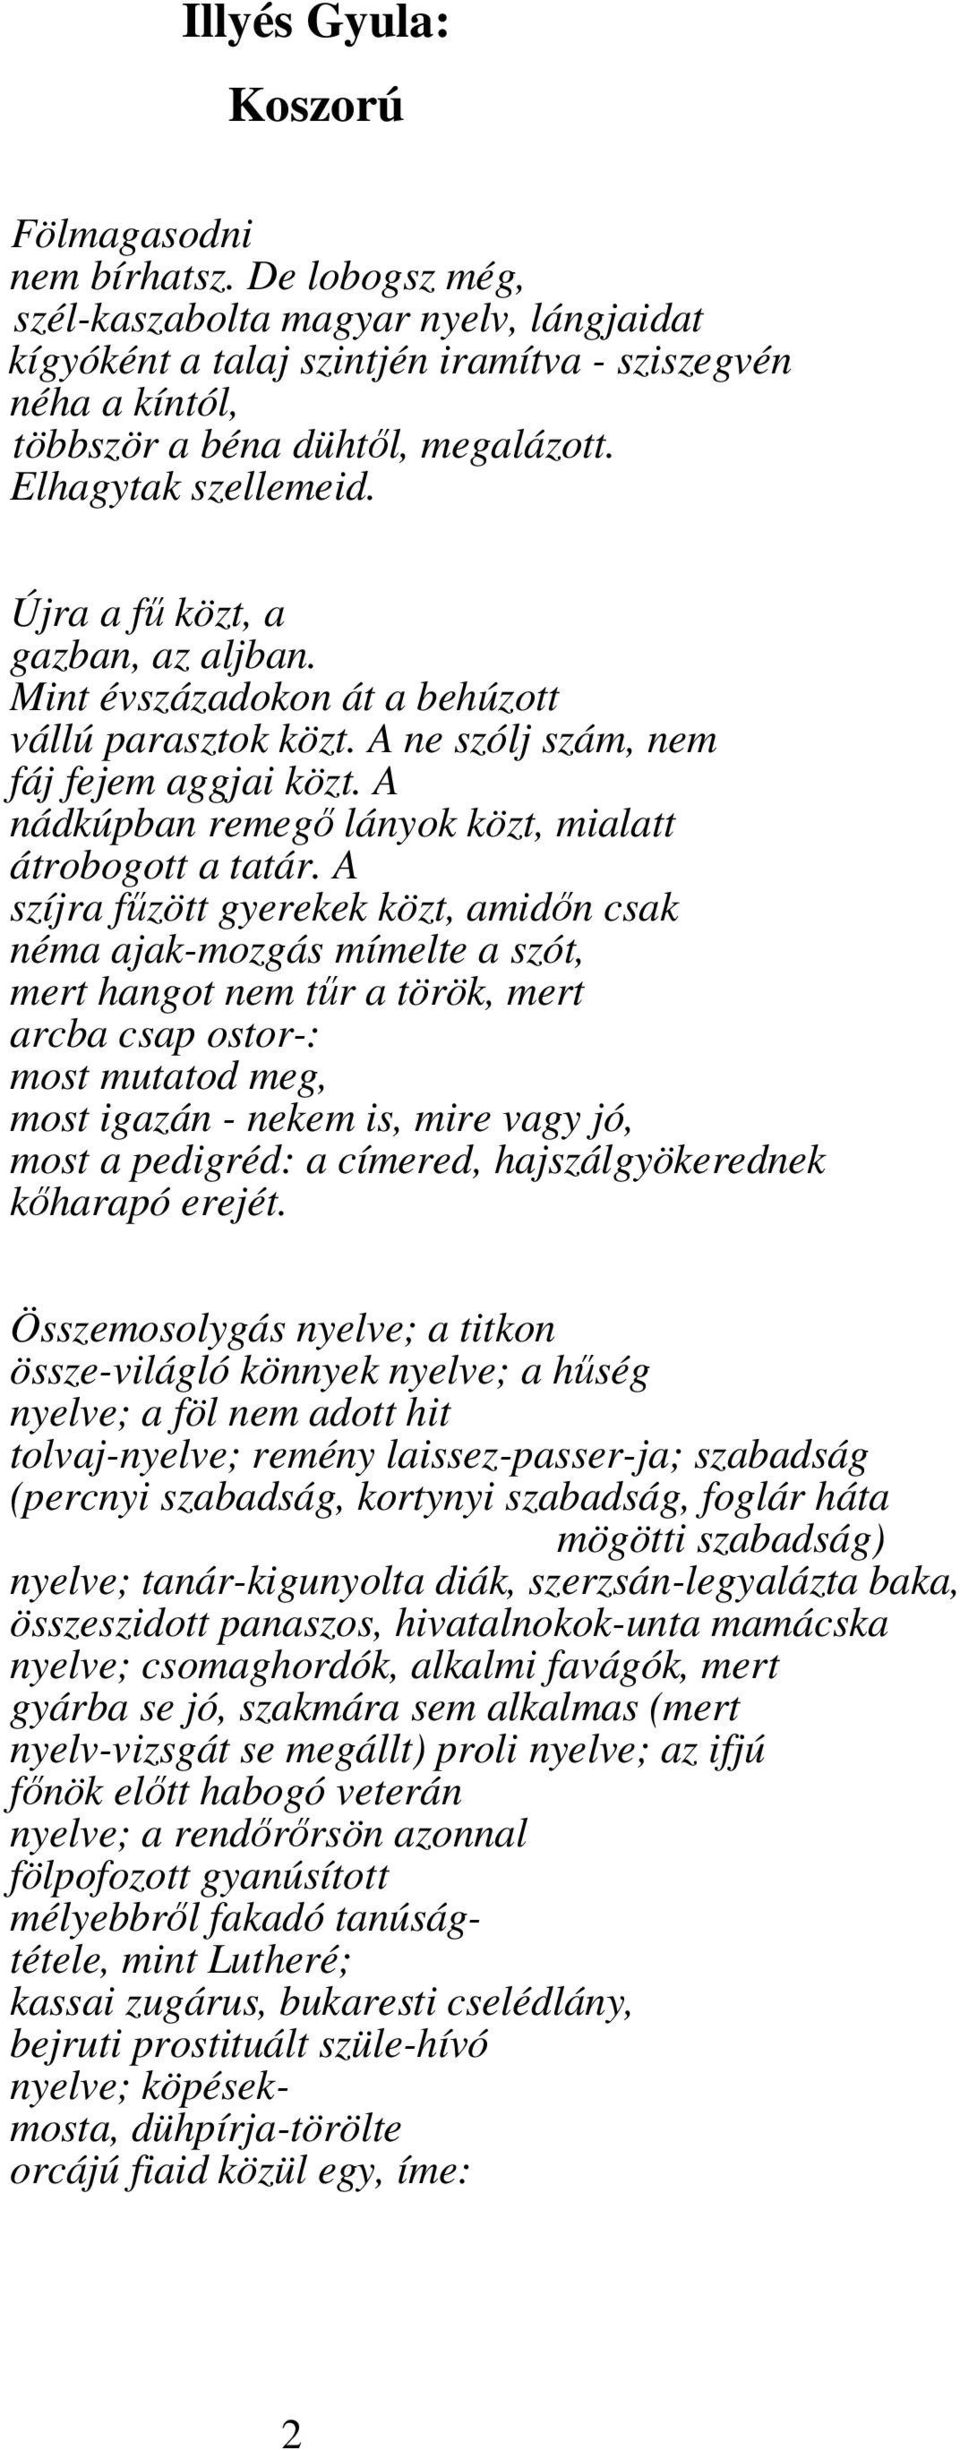 látomás tatár nyelven